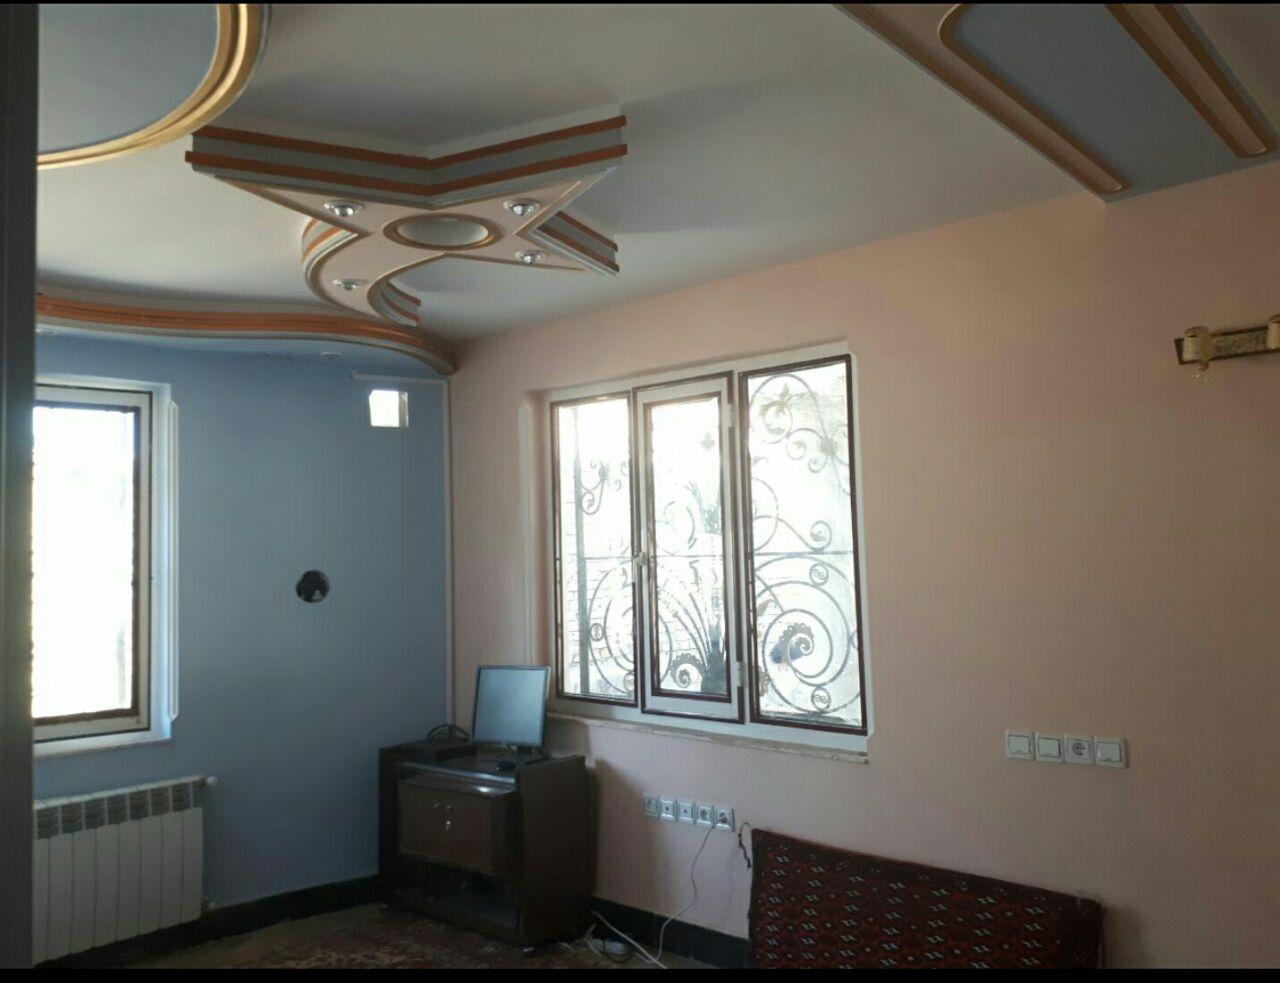 اجاره خانه سنتی گل سرخ در زنجان